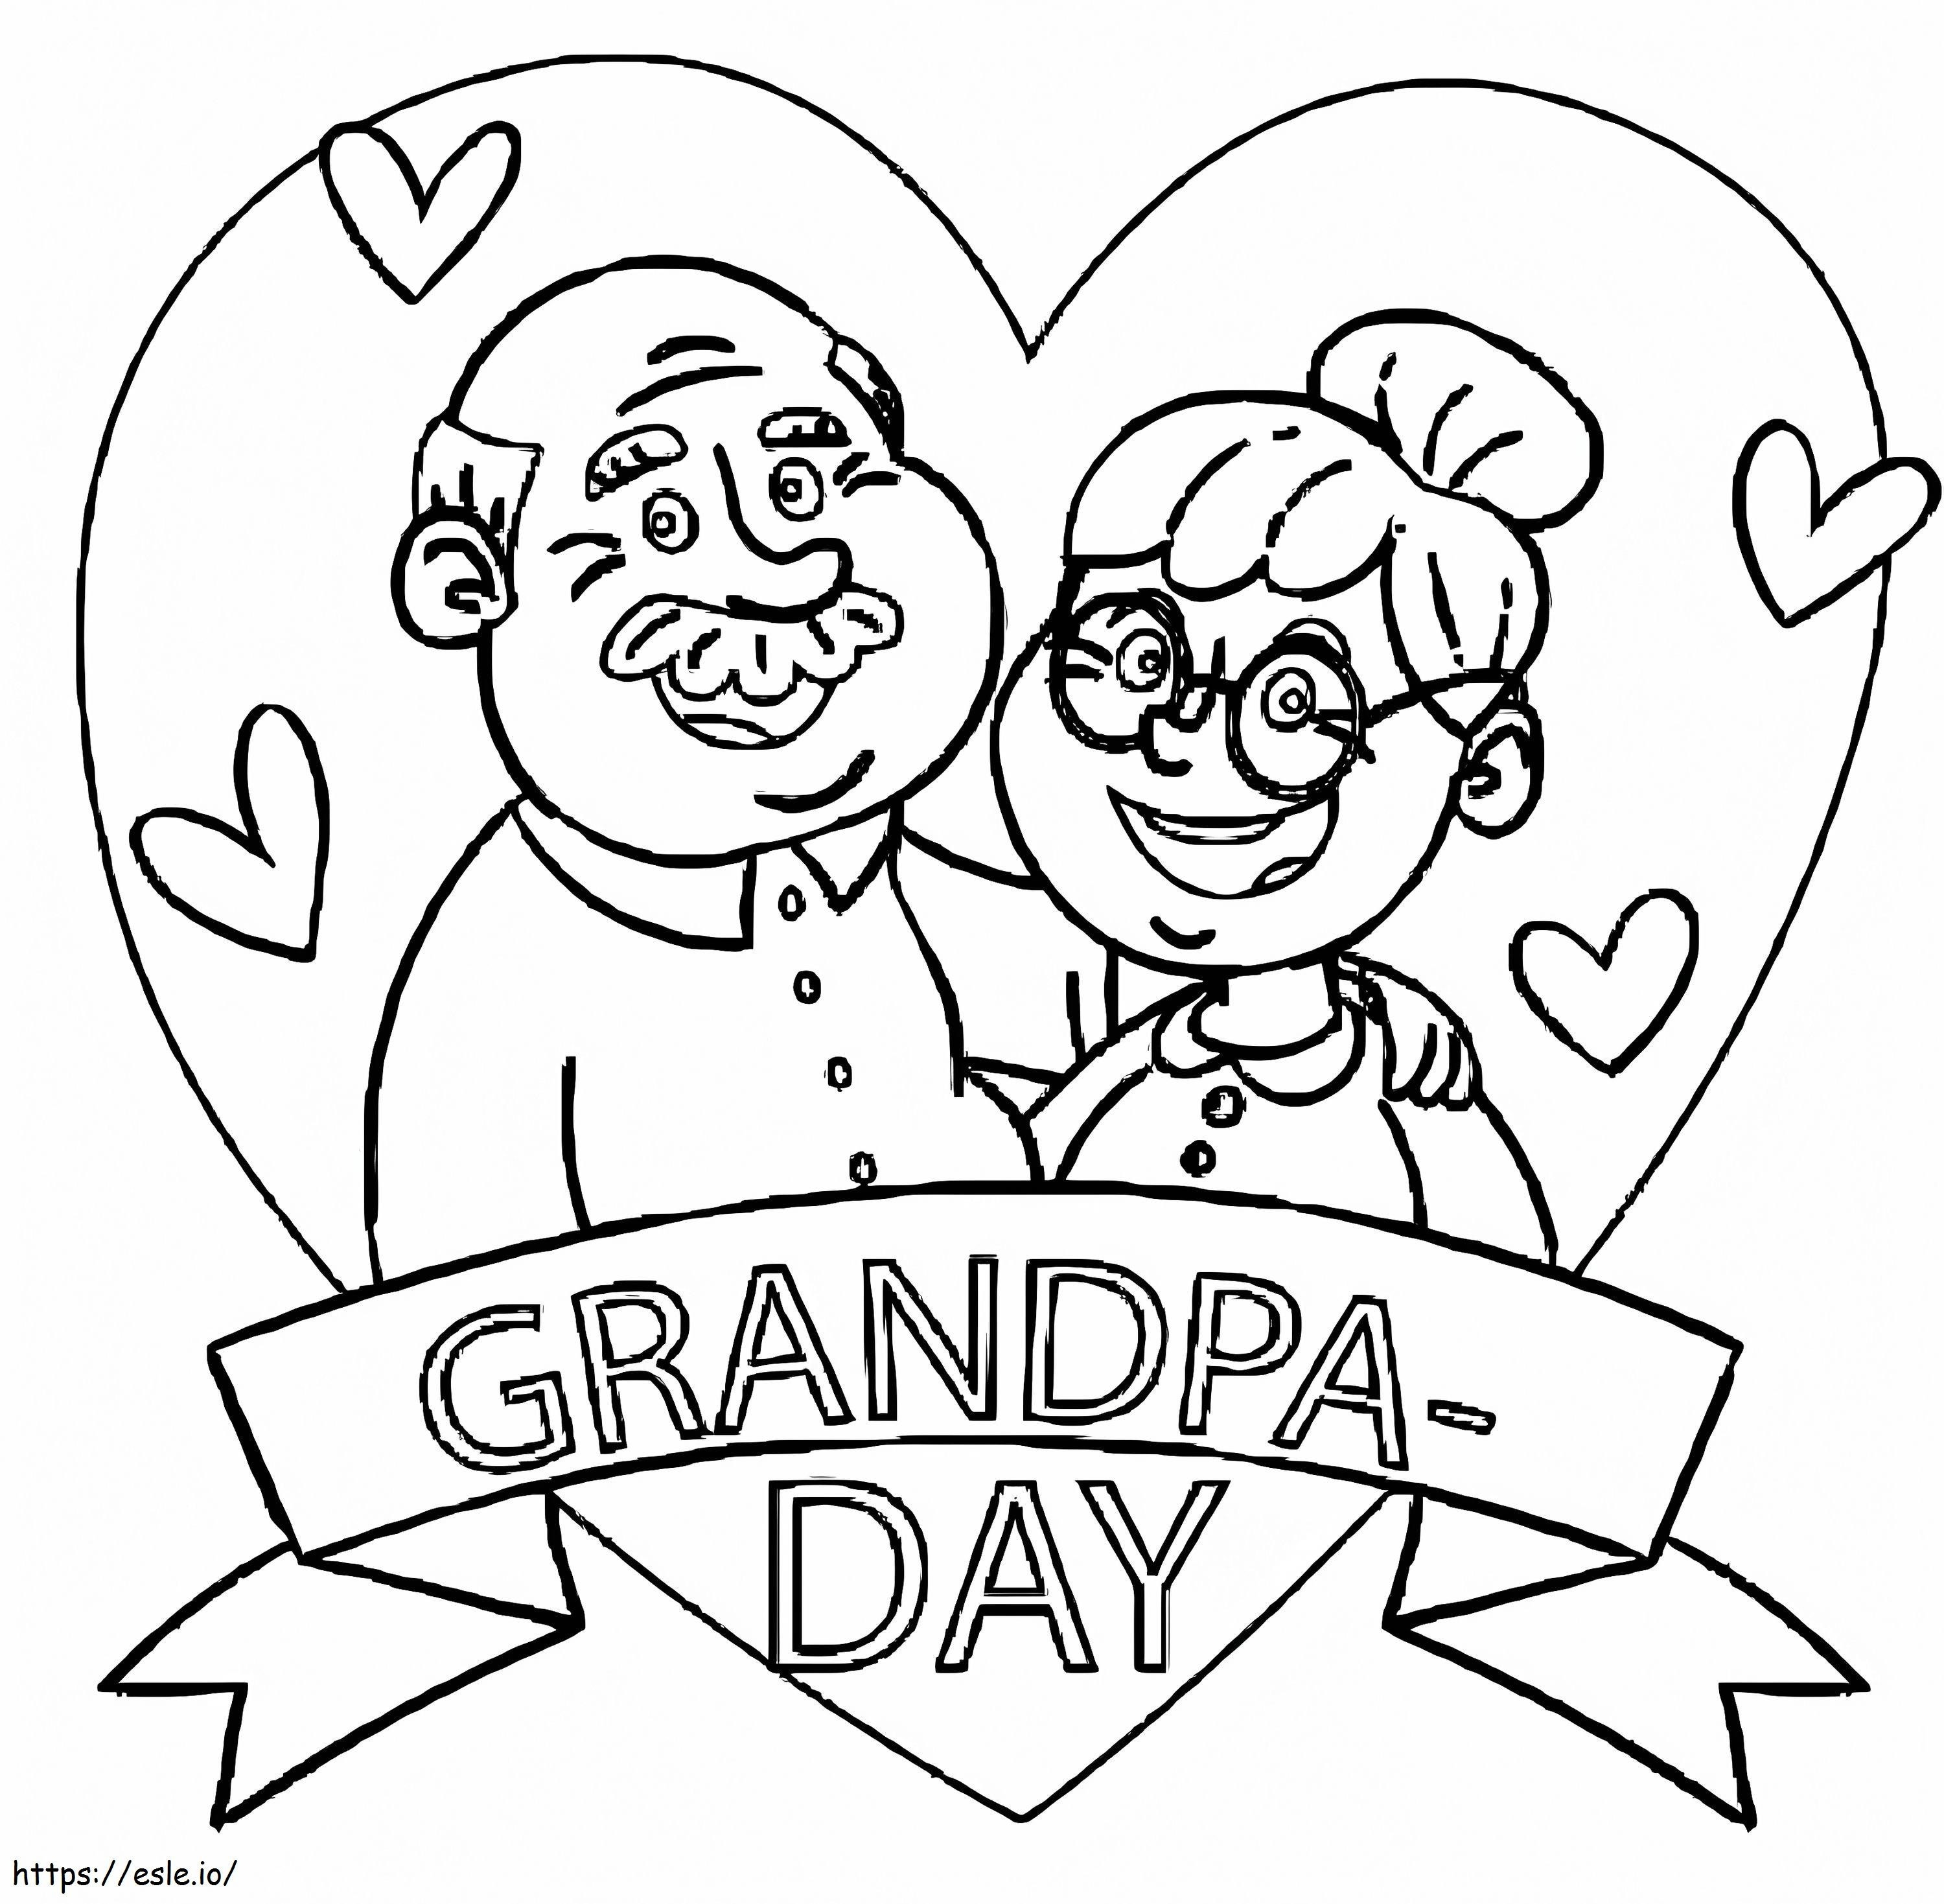 Szczęśliwego Dnia Babci i Dziadka 4 kolorowanka